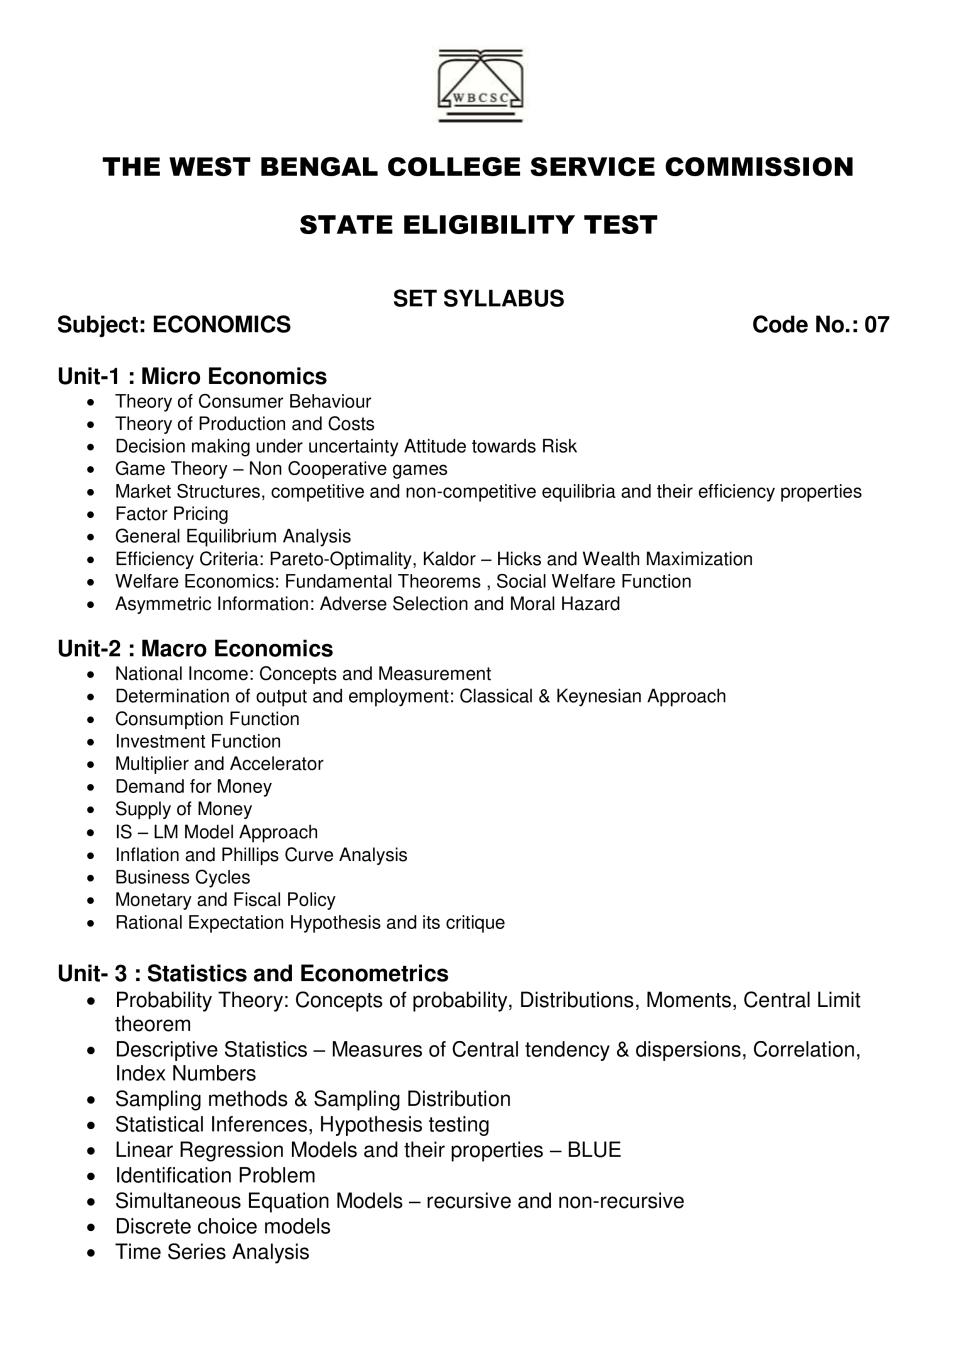 WB SET Syllabus for Economics - Page 1